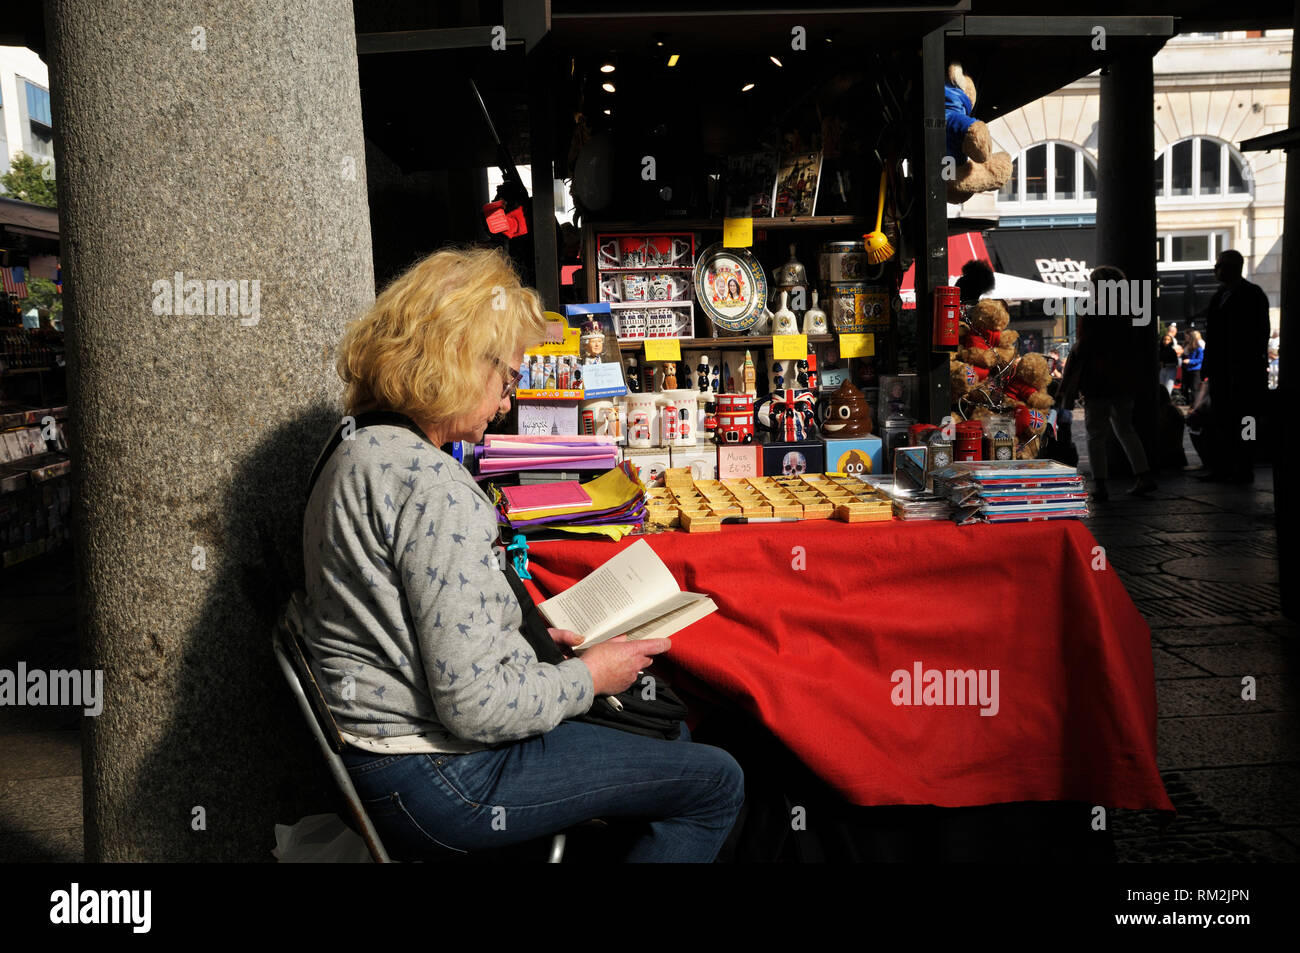 A senior woman dépenser un moment tranquille pour lire un livre à son échoppe de marché de souvenirs touristiques, Covent Garden, London, England, UK Banque D'Images